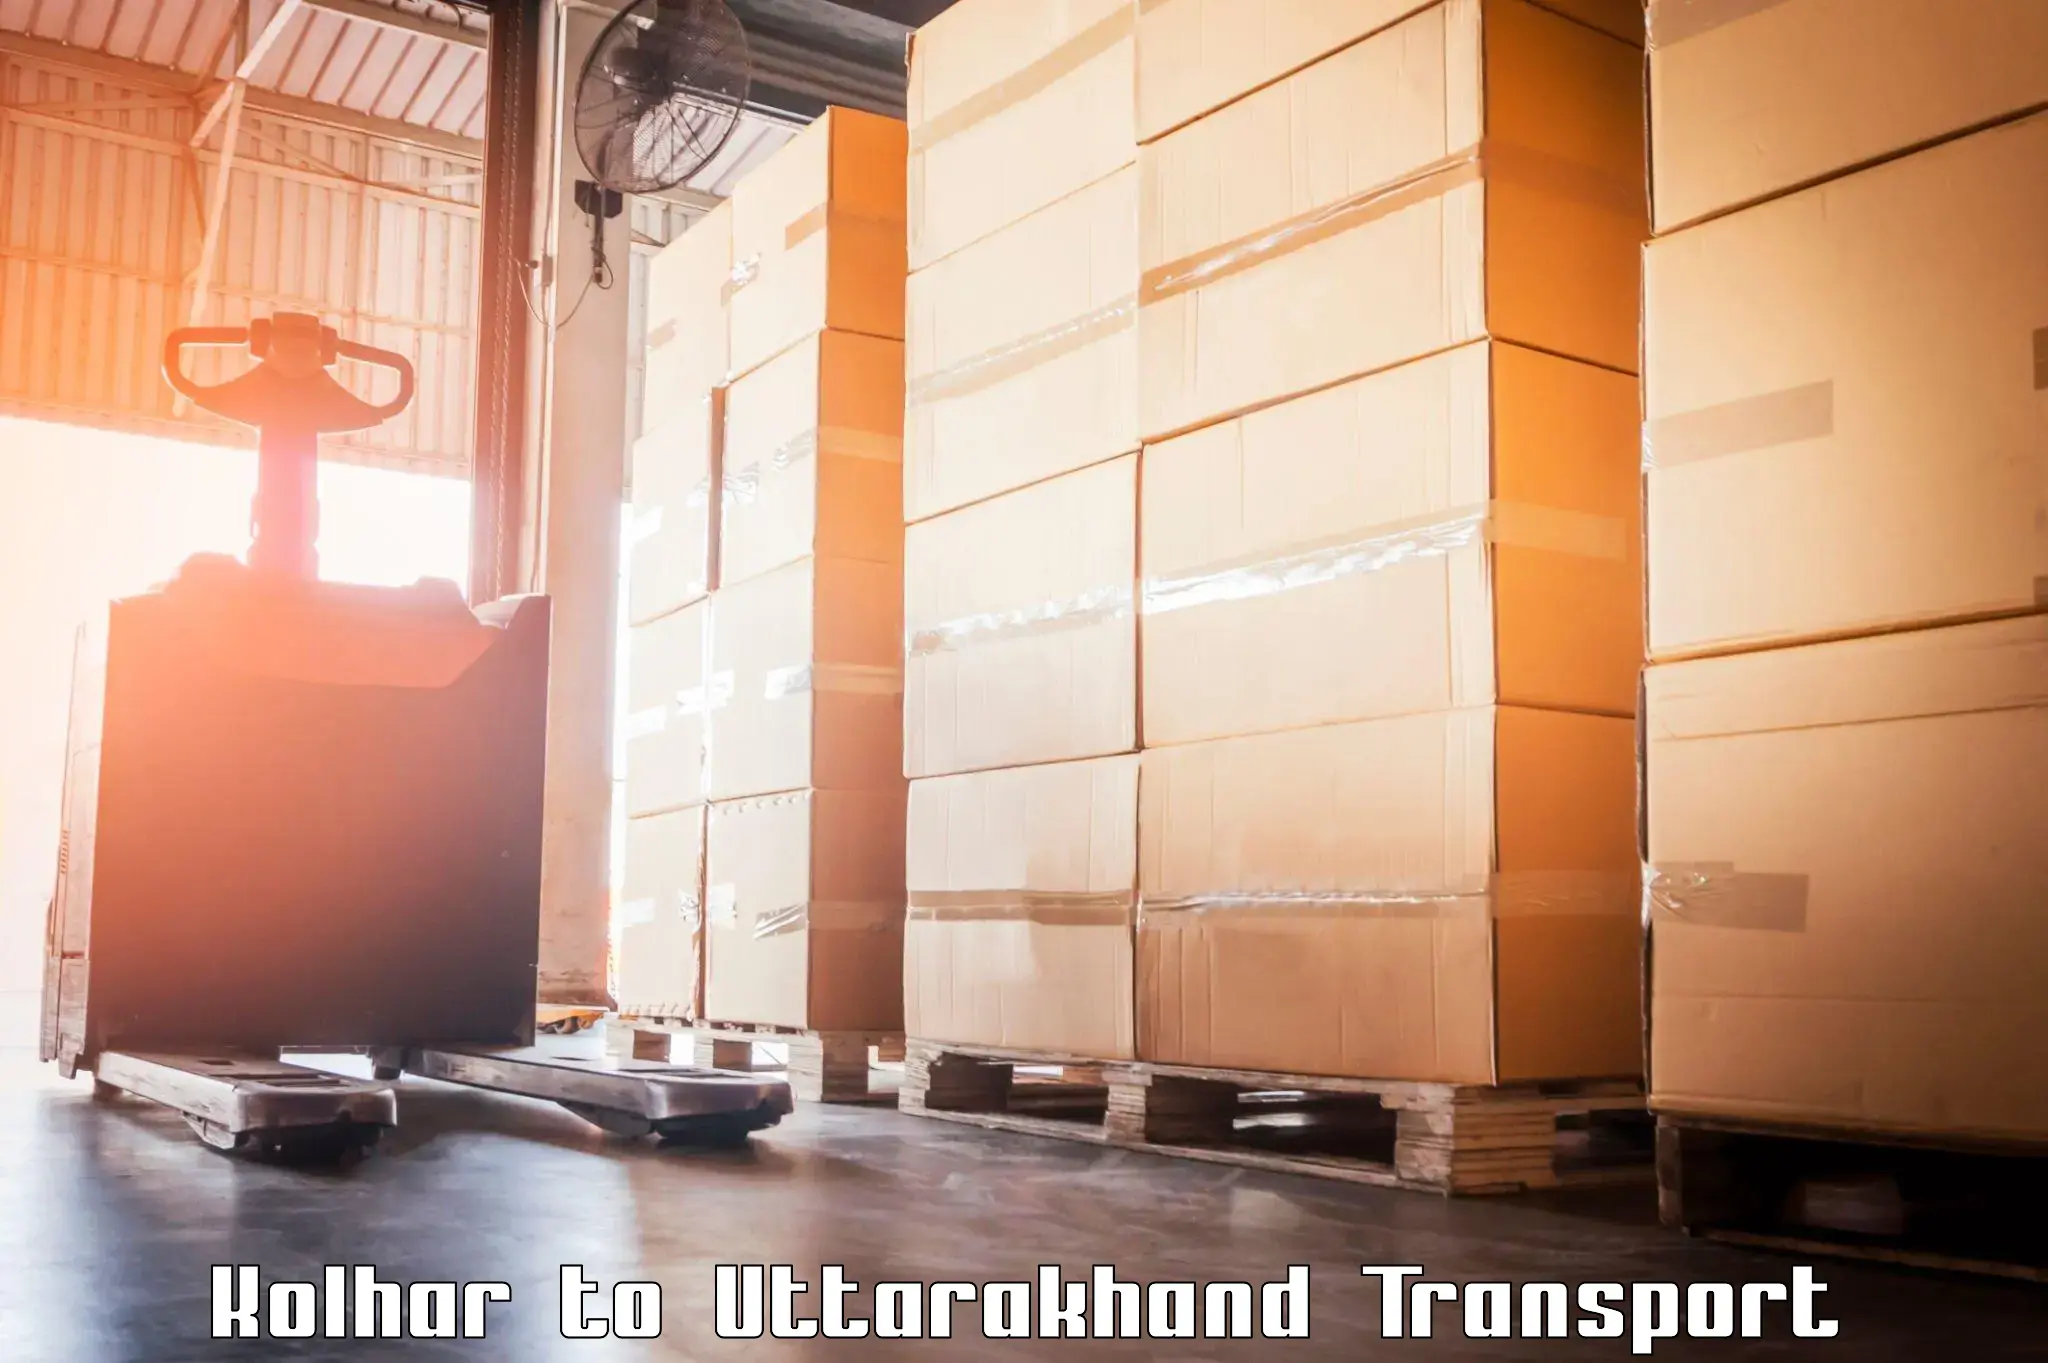 Cargo transport services in Kolhar to Uttarkashi